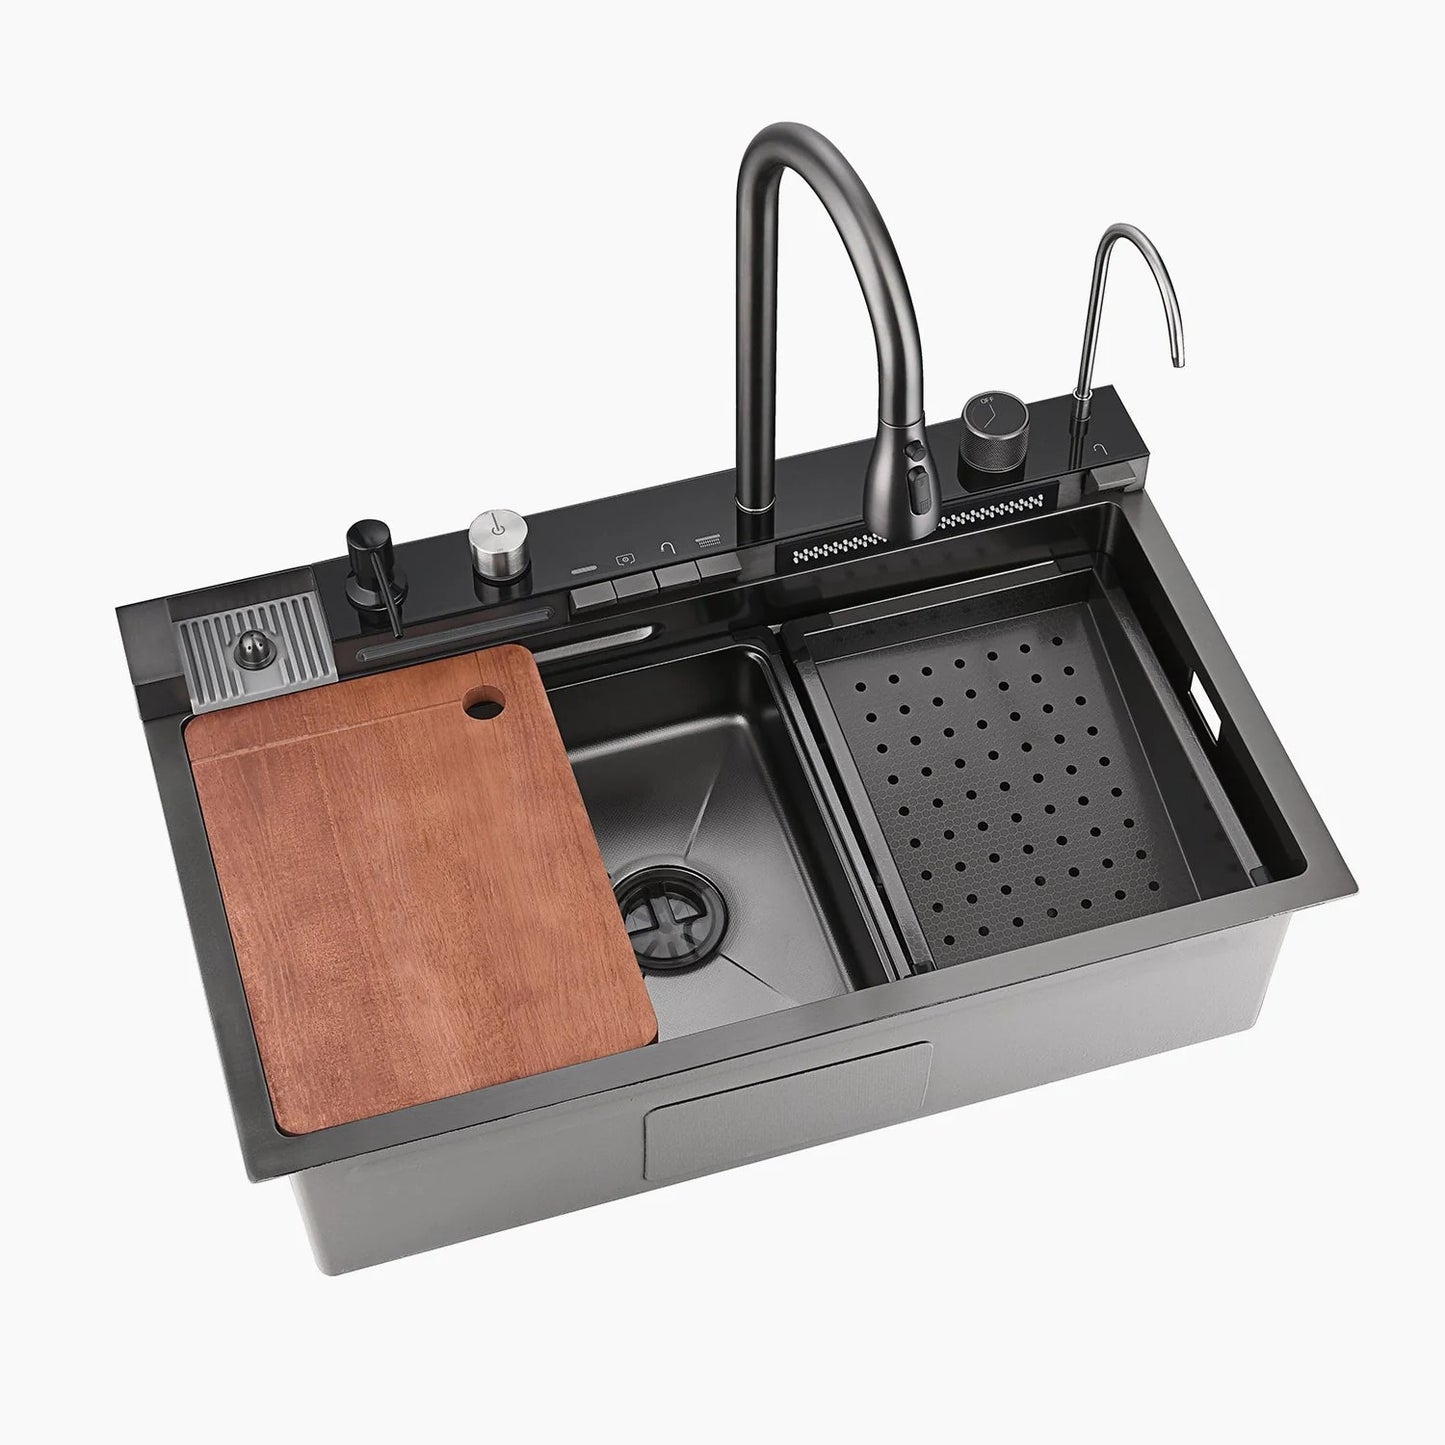 Fregadero de cocina con dos grifos en cascada Aqua pantalla digital de temperatura e iluminación LED